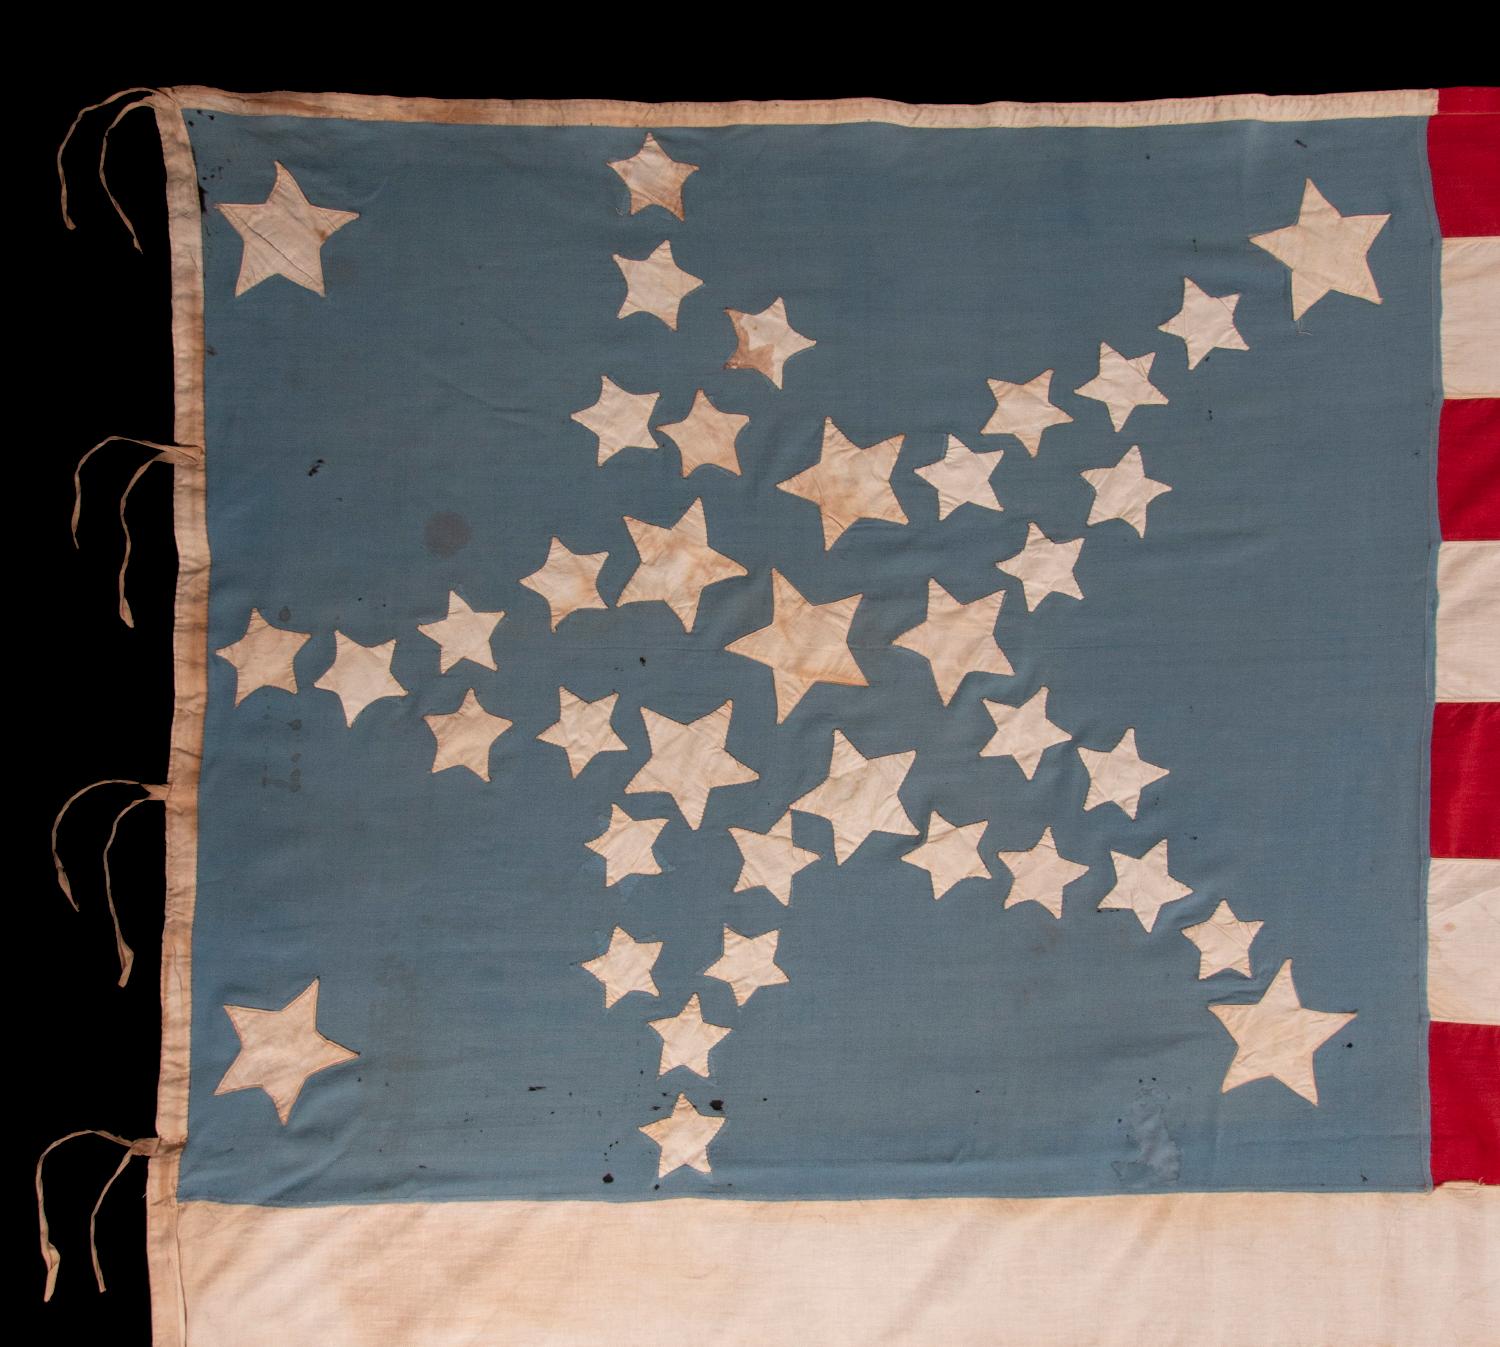 34 STERNE IN EINER SKURRILEN WIEDERGABE DES GROSSEN STERNENMUSTERS AUF EINER FLAGGE AUS DER BÜRGERKRIEGSZEIT MIT KORNBLUMENBLAUEM KANTON, 1876 AUF 39 STERNE AKTUALISIERT

Amerikanische Nationalflagge mit 34 Sternen und zusätzlichen Sternen und einem